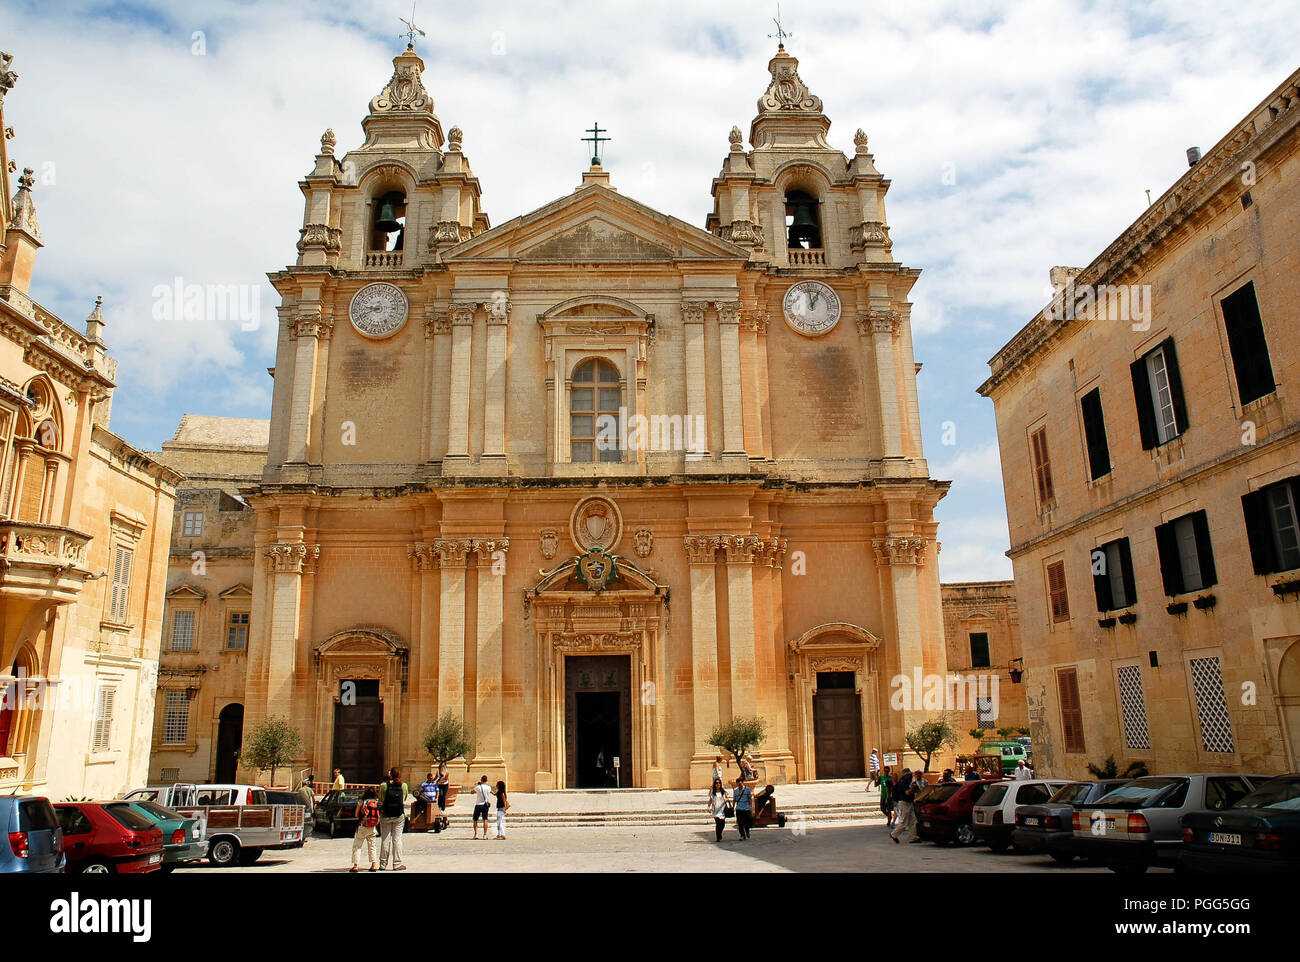 MALTA-settembre 22:persone non identificate hanno di fronte all'ingresso principale della Basilica di San Paolo nella Cattedrale di Mdina, Malta,su settembre,22,2010. Foto Stock